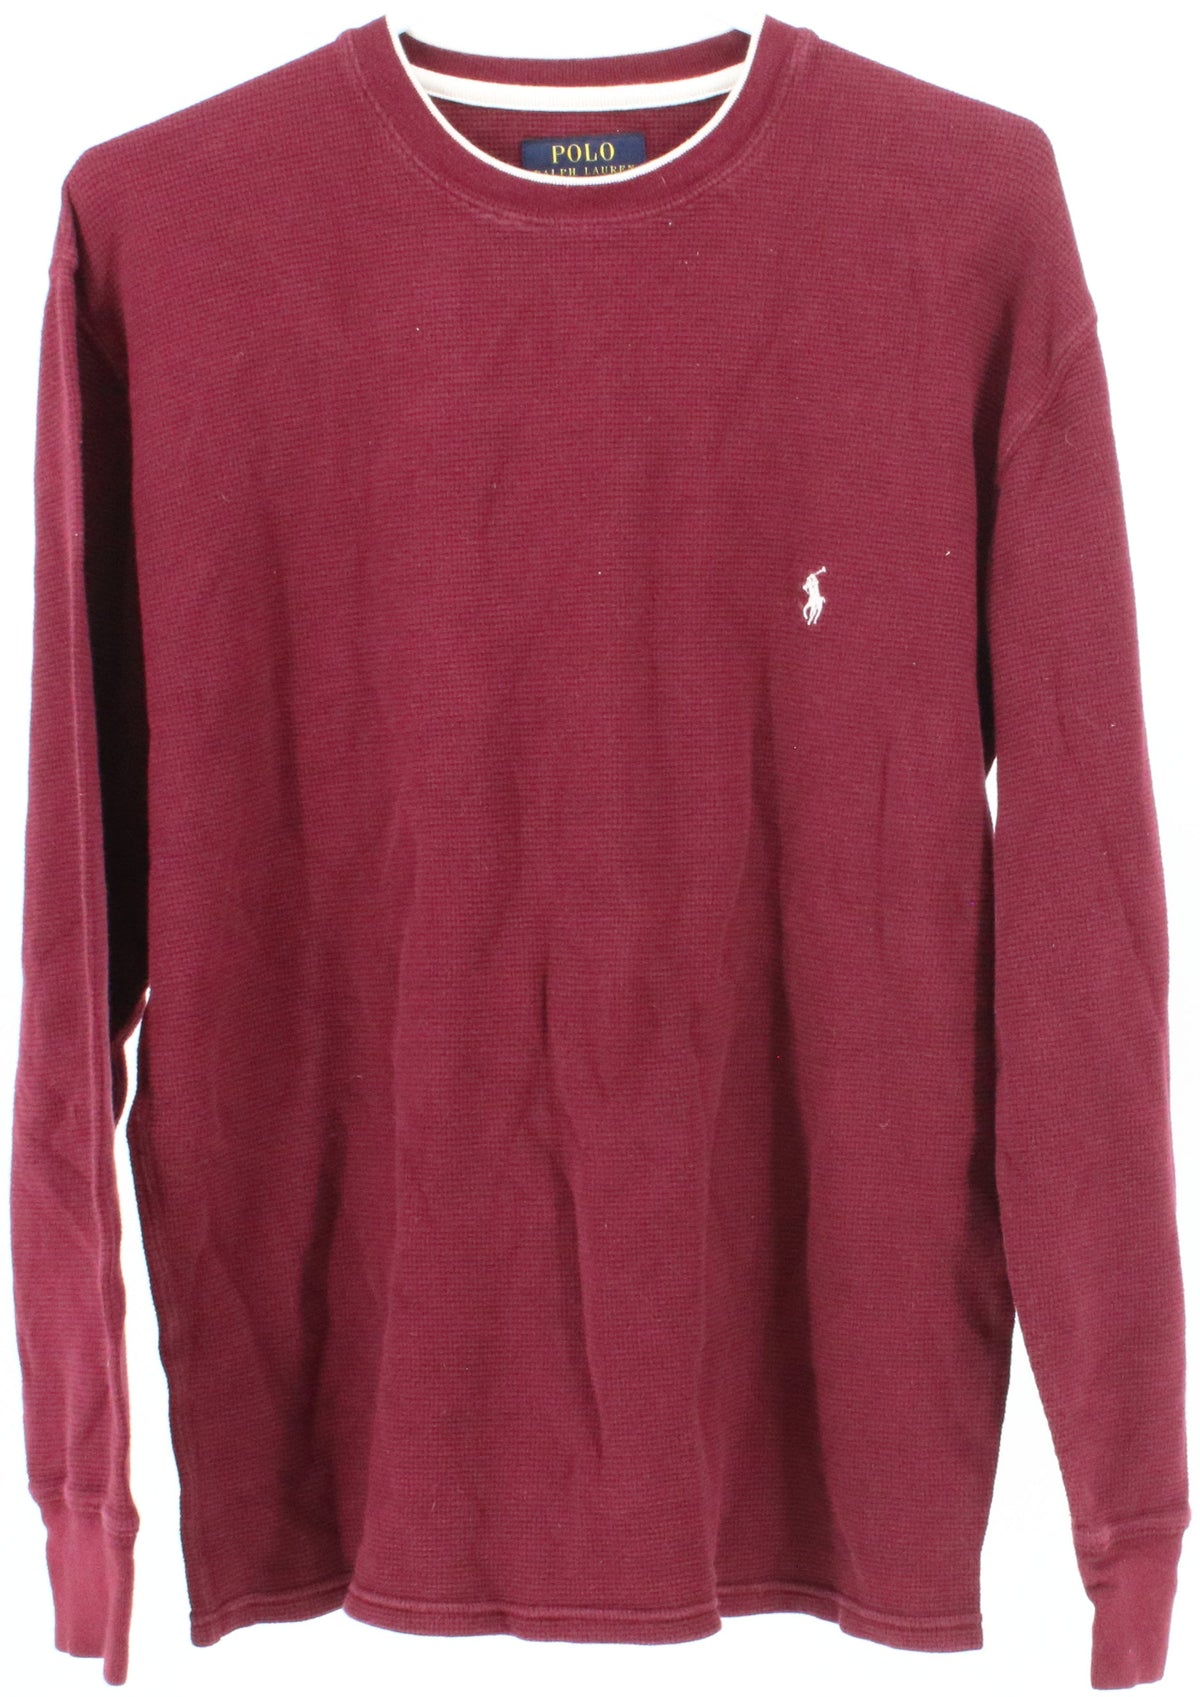 Polo Ralph Lauren Burgundy Textured Long Sleeved T-Shirt